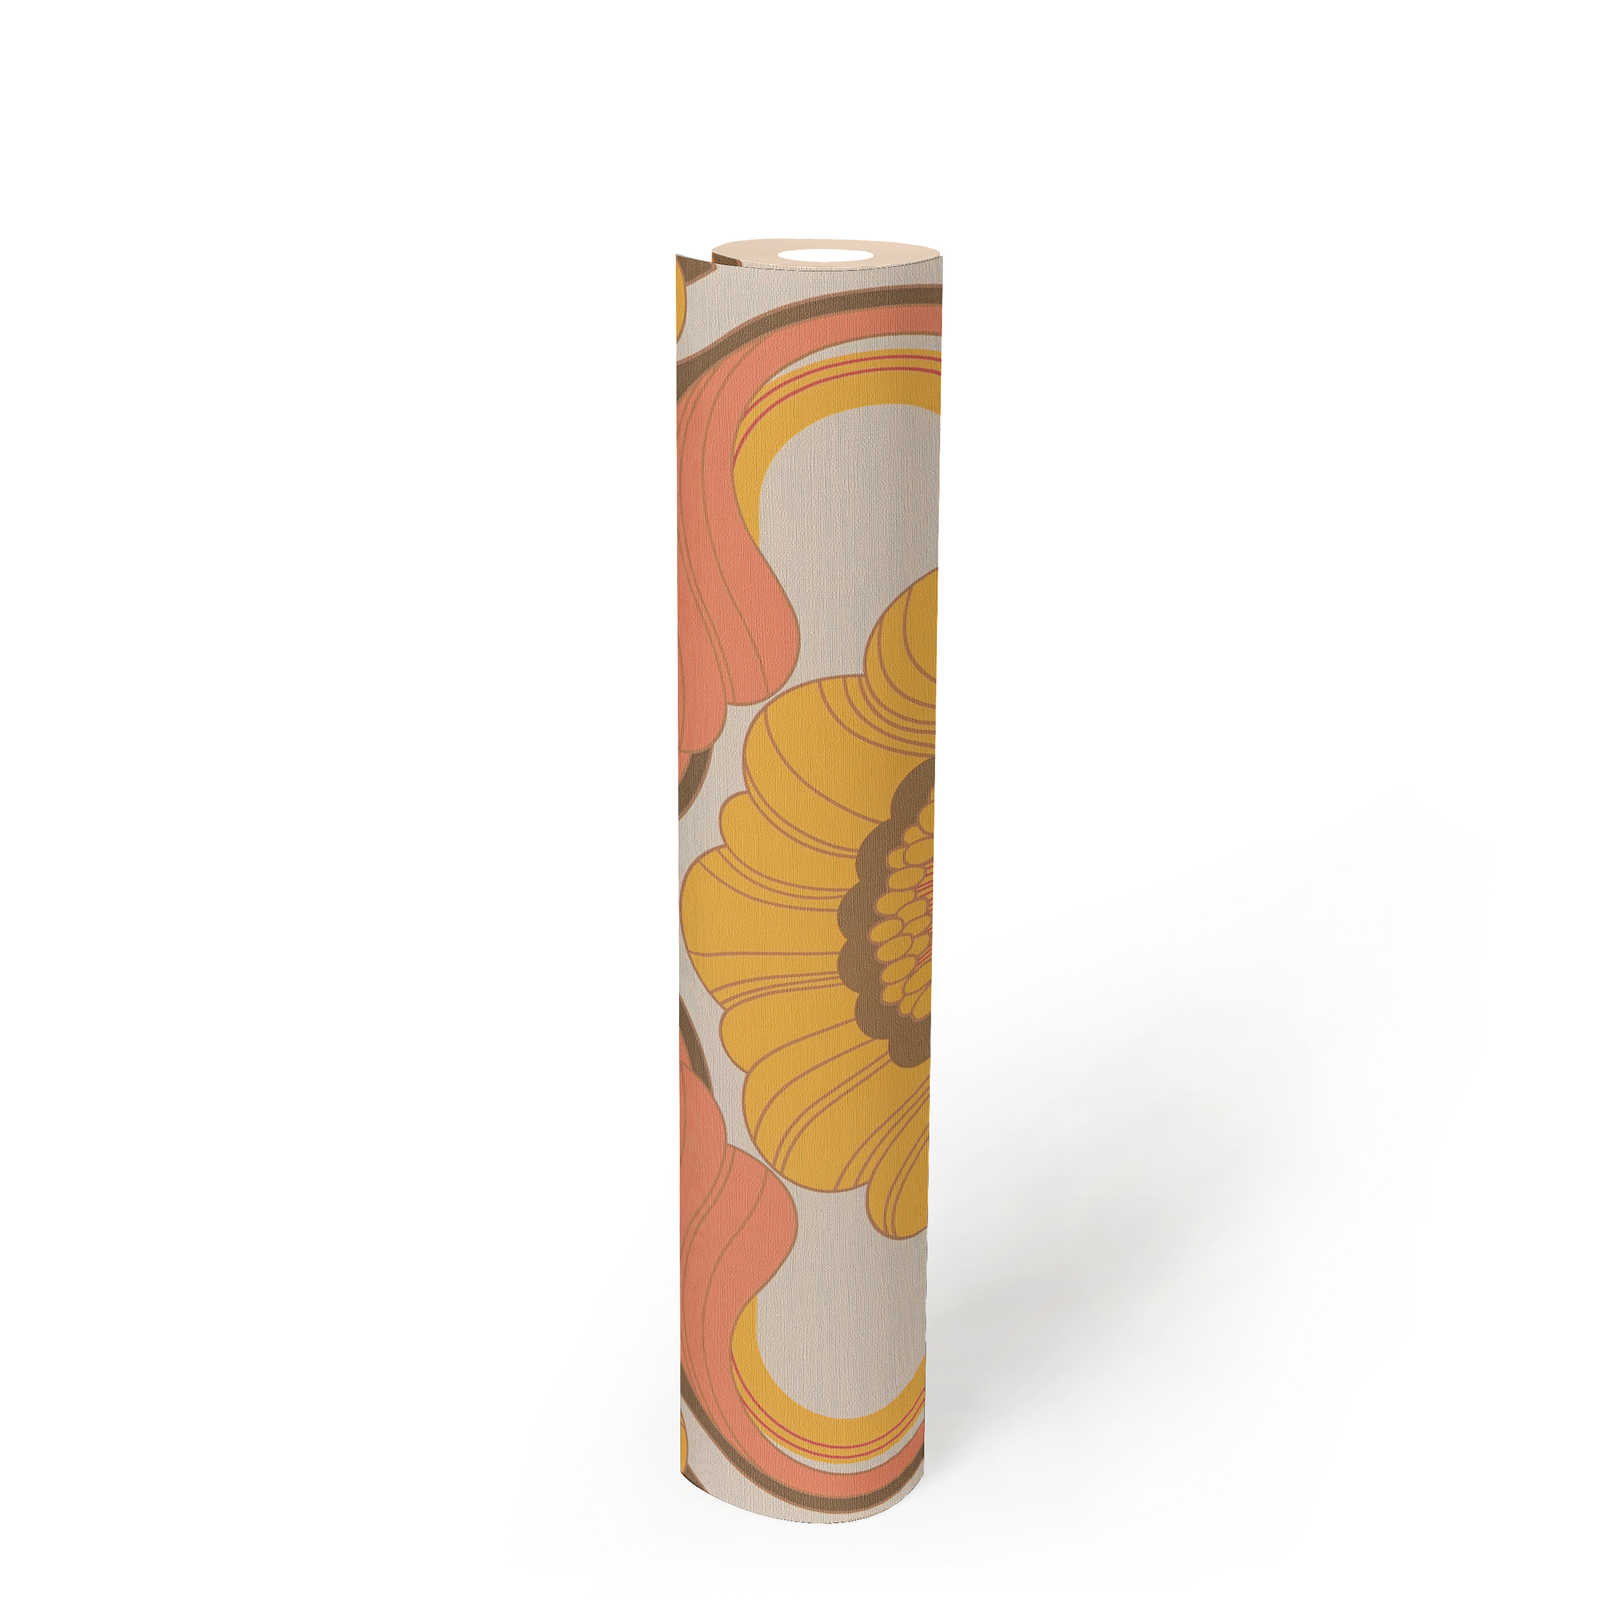             papier peint en papier floral rétro avec motif floral aux couleurs chaudes - marron, jaune, orange
        